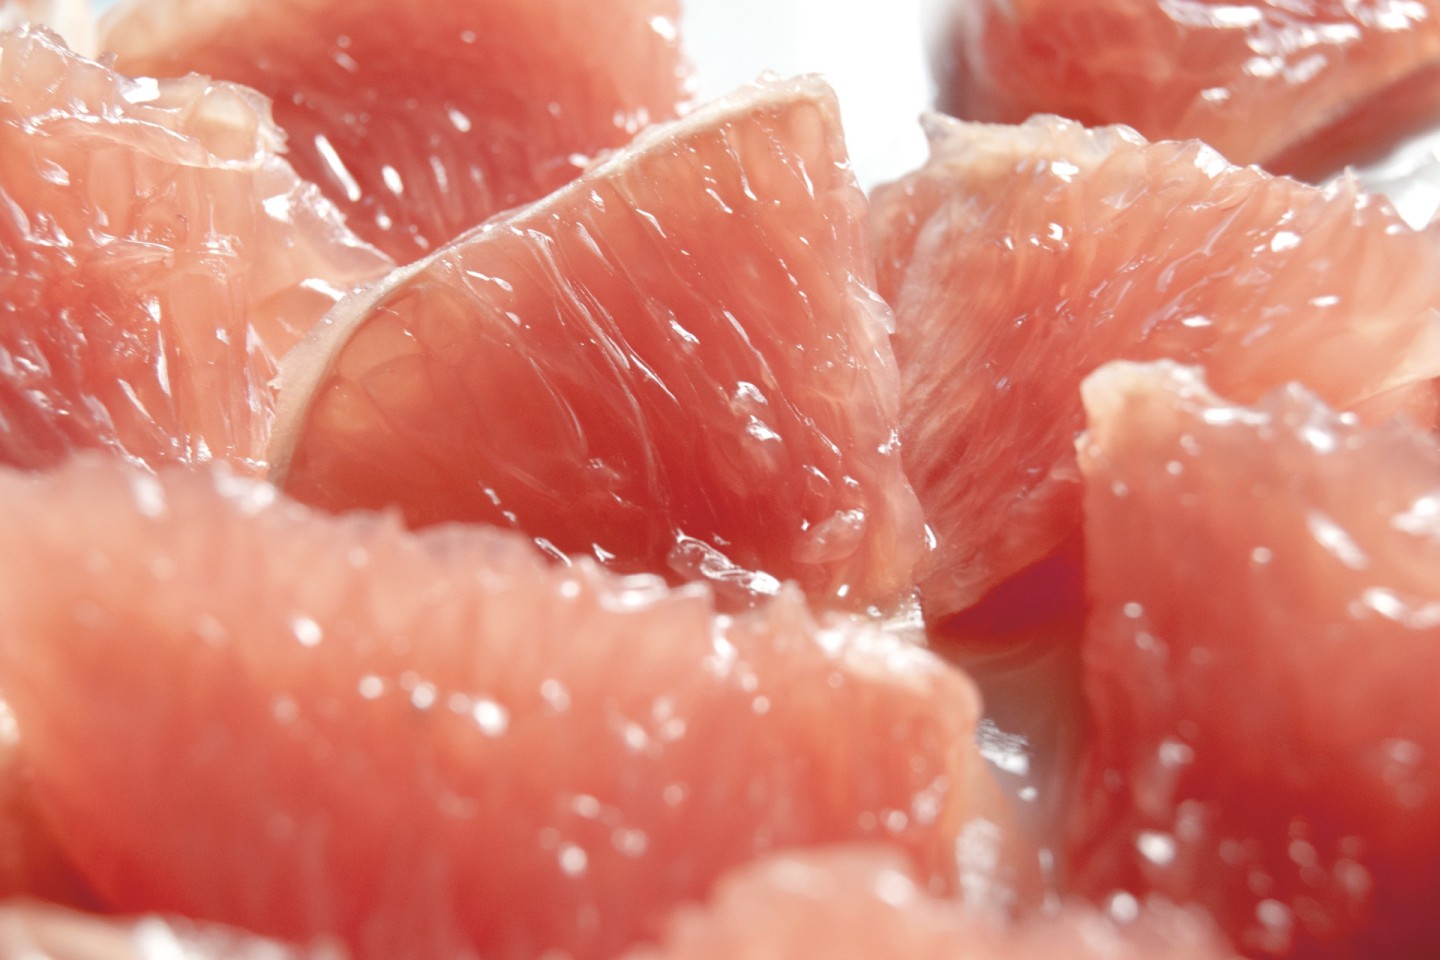 В грейпфруте много клетчатки, которая помогает нормализовать вес: она продлевает чувство сытости, и за счет этого потребляется меньше калорий